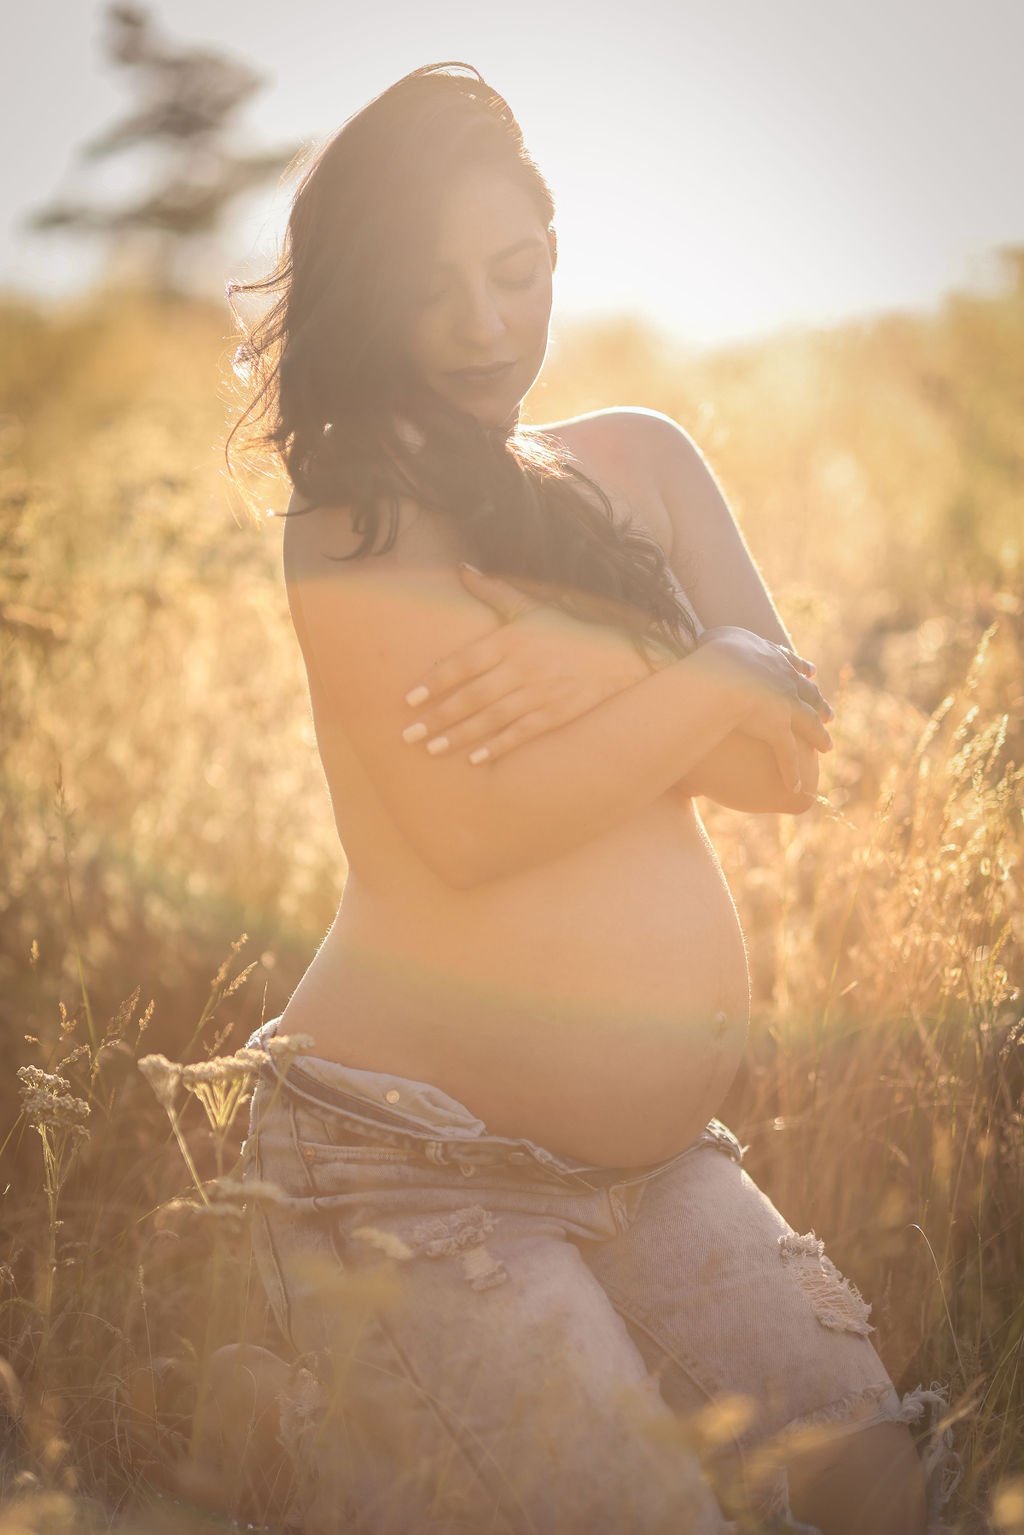 Maternity portrait of woman in jeans topless in Montana field.jpg